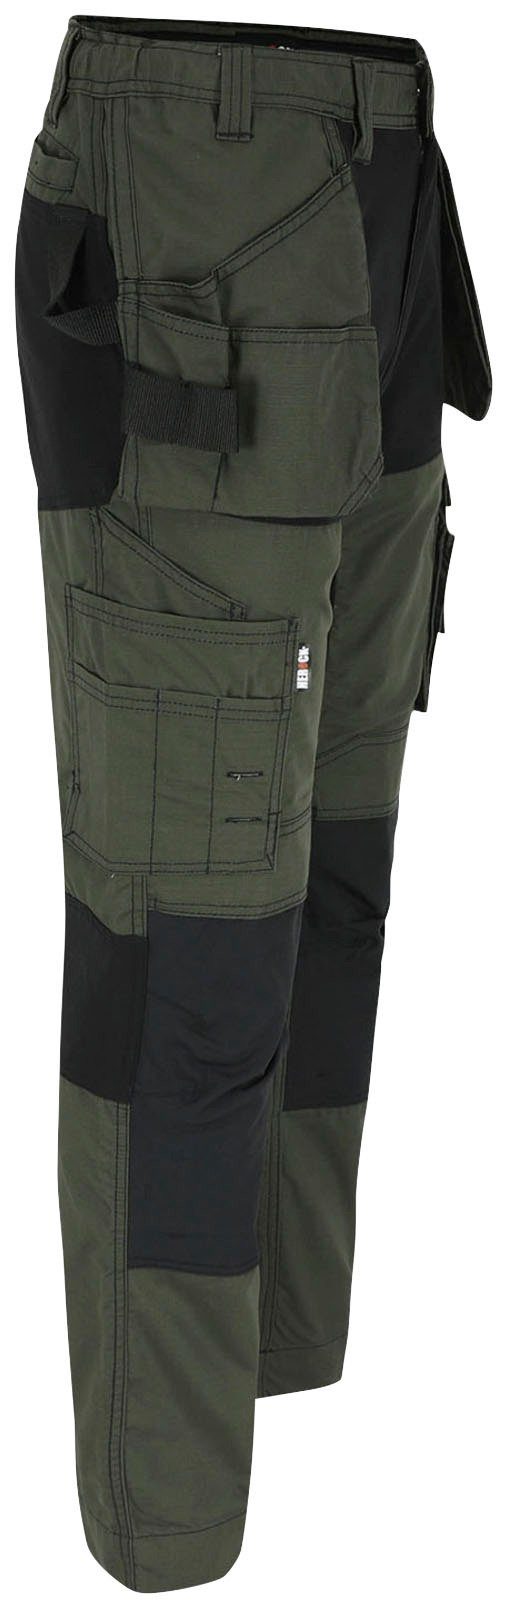 Nageltaschen und Multi-Pocket-Hose Hose Arbeitshose 2 Herock Spector khaki 4-Wege-Stretch-Teilen festen mit